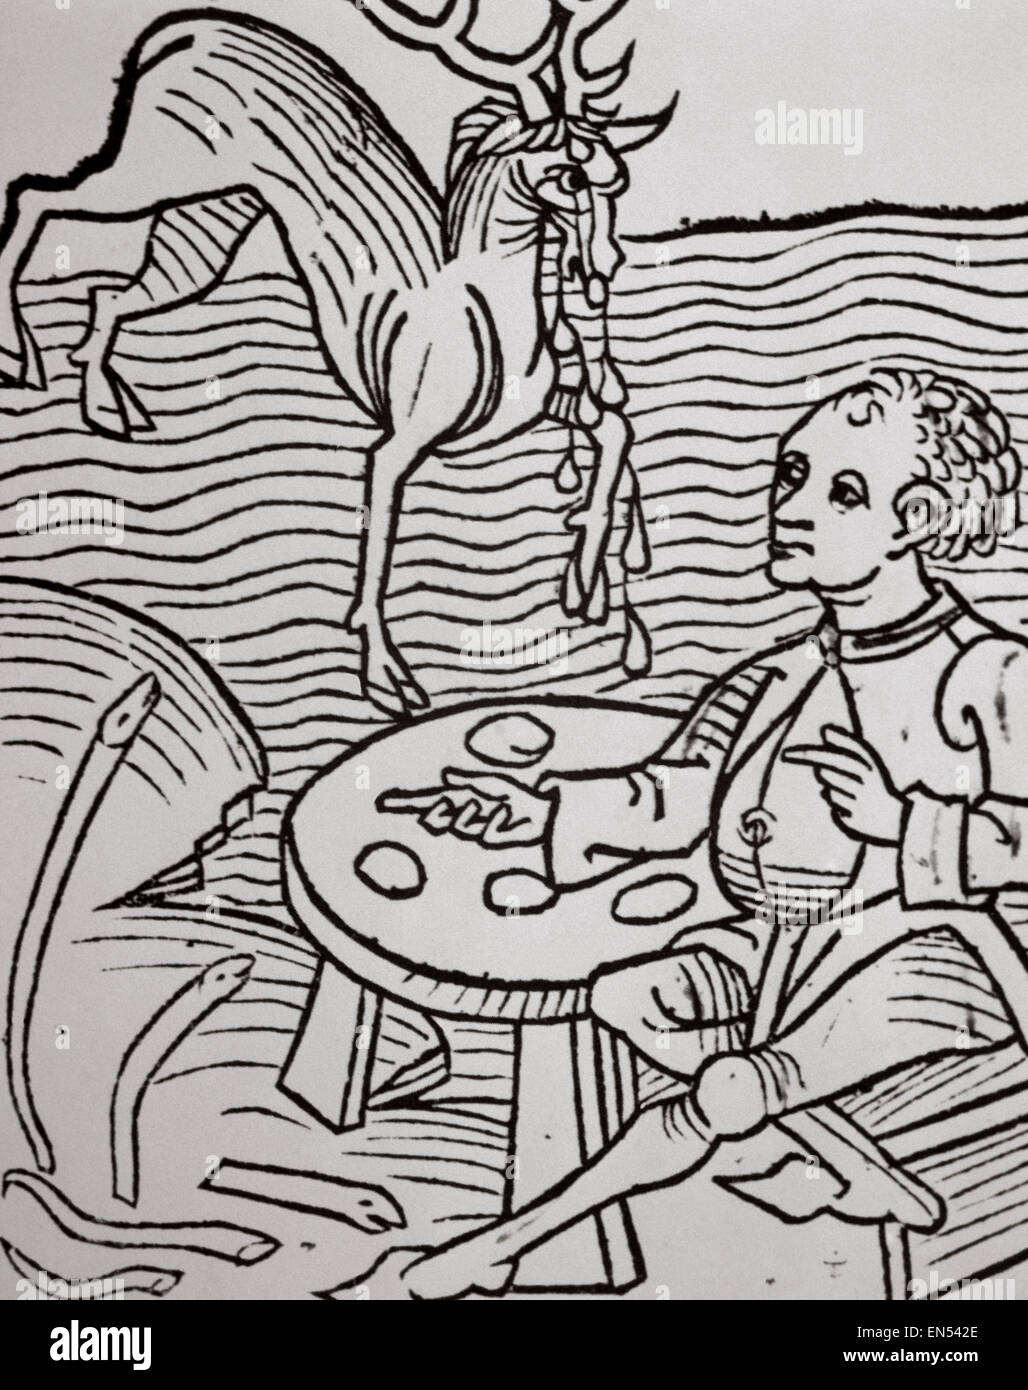 Ein Mann auf der Suche nach einem Reh Tränen als Aphrodisiakum. Xilografia. Hortus Sanitatis von Johannes de Cuba (1430-1503). 15. JH. Stockfoto